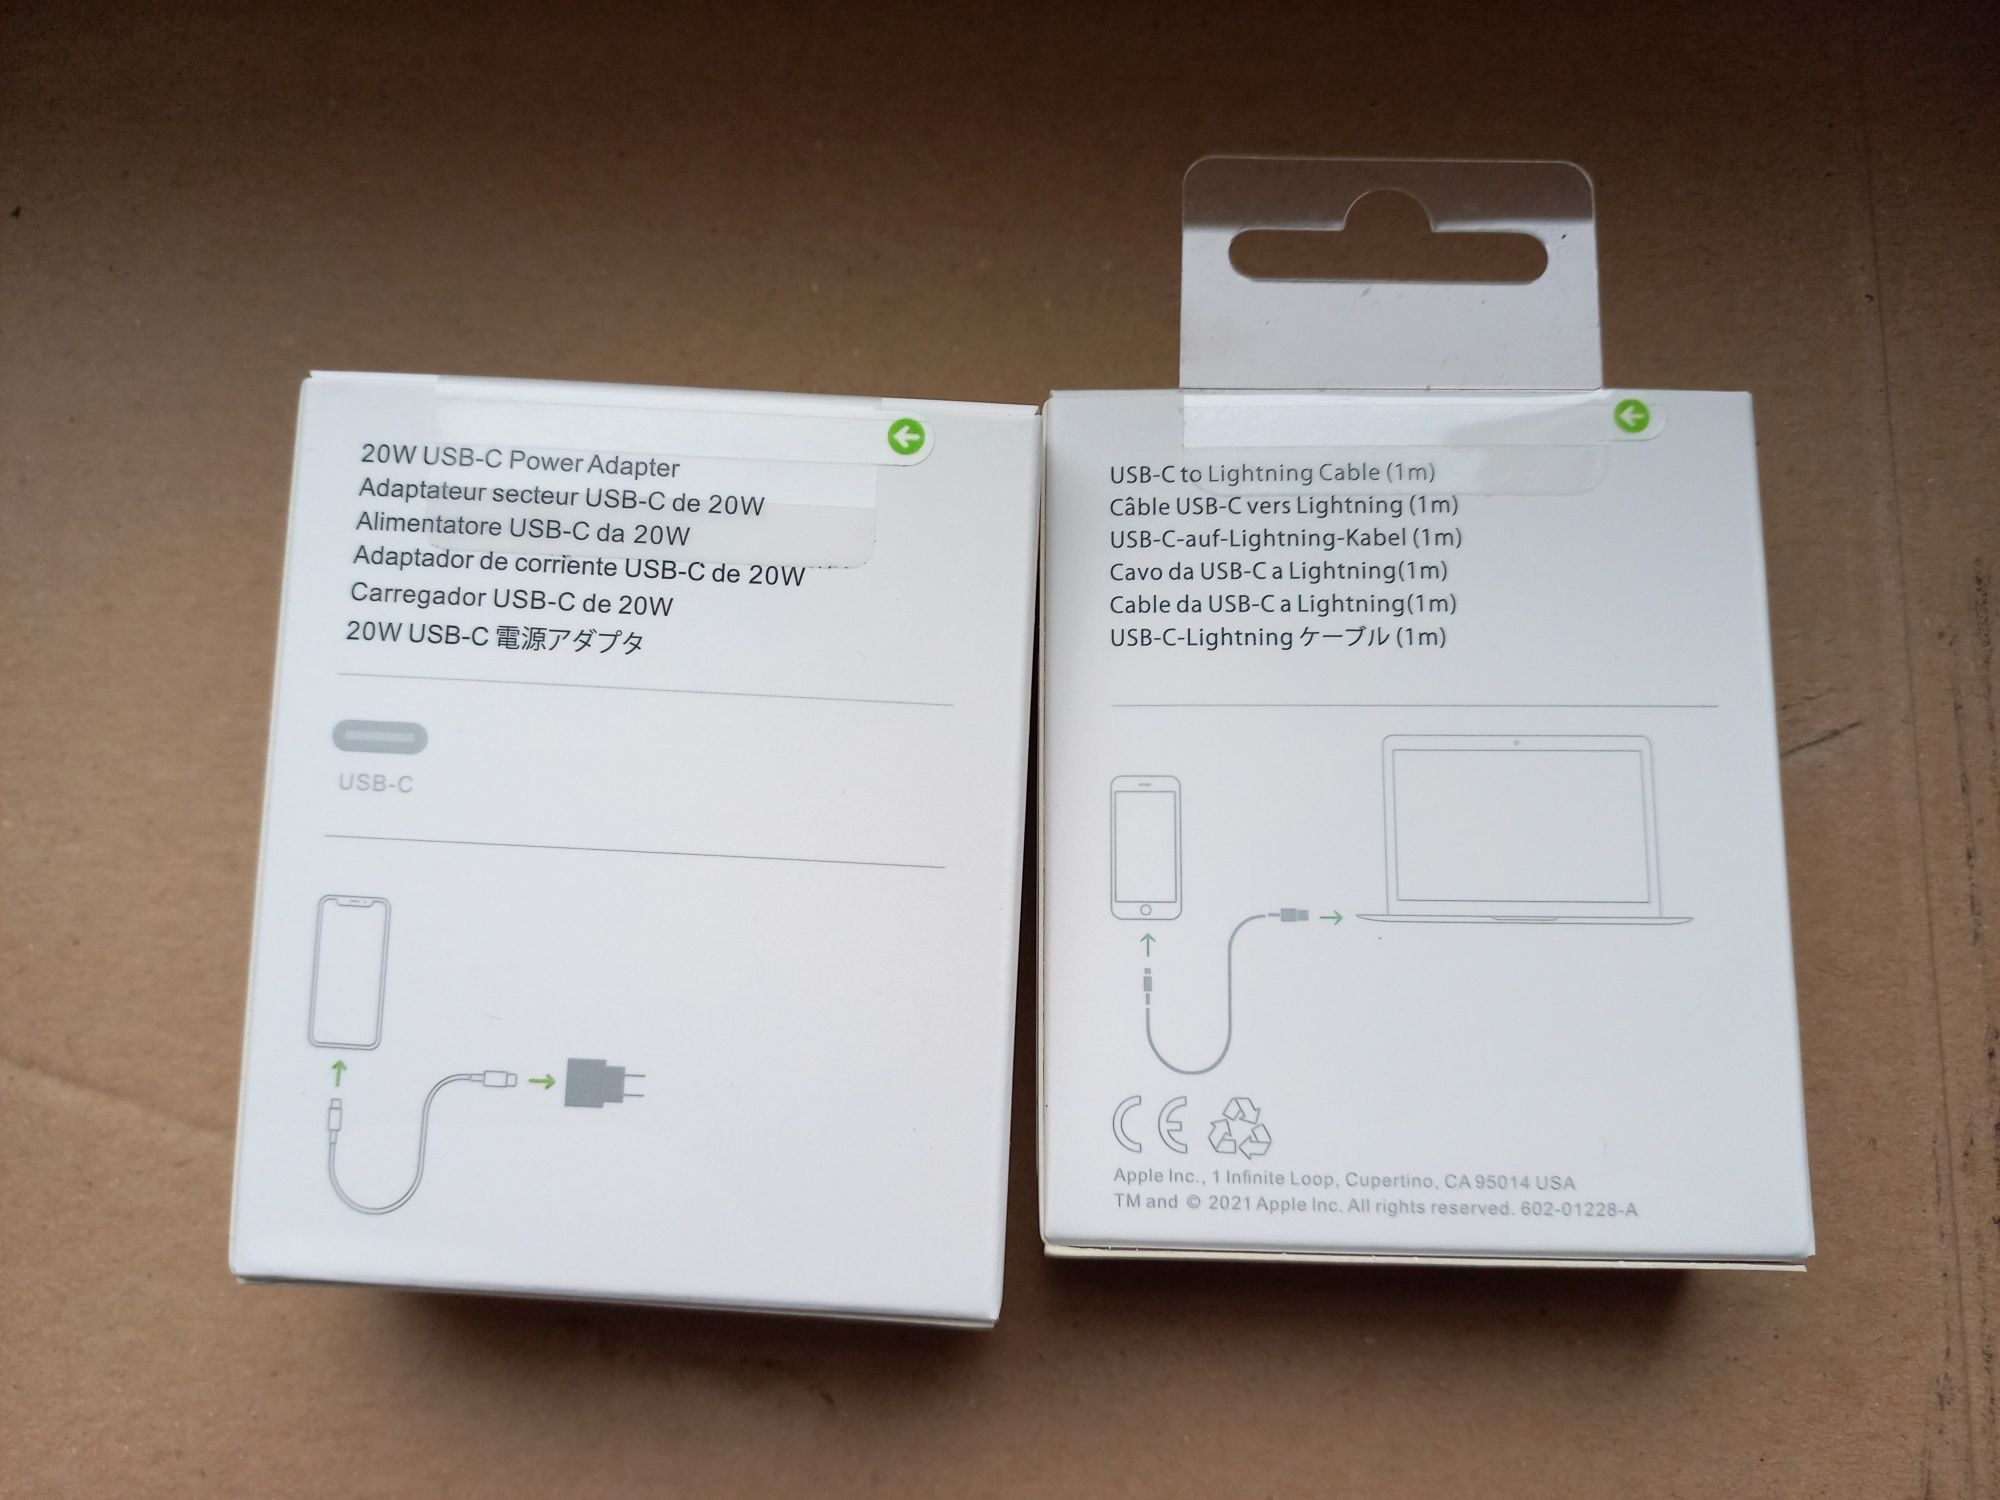 Kostka Zasilacz USB-C 20W Power Adapter Kabel USB-C to Lightning NOWE